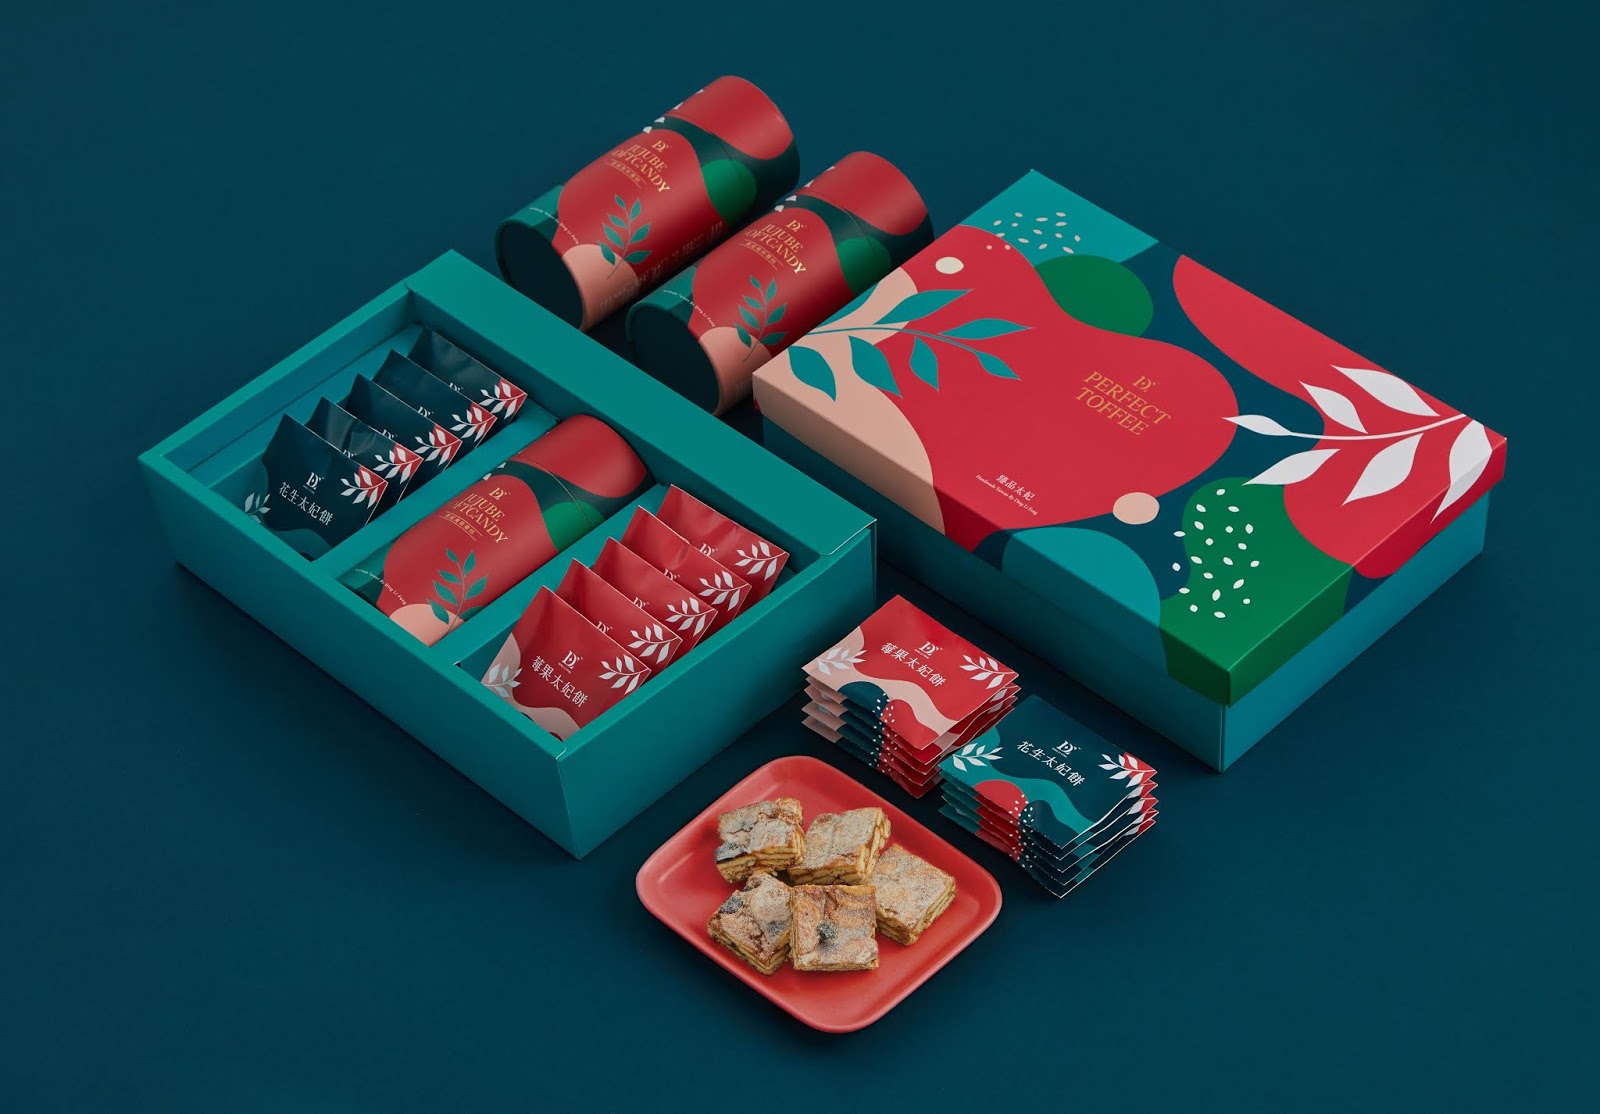 饼干包装盒设计-四喜包装设计新闻-四喜亮点包装设计